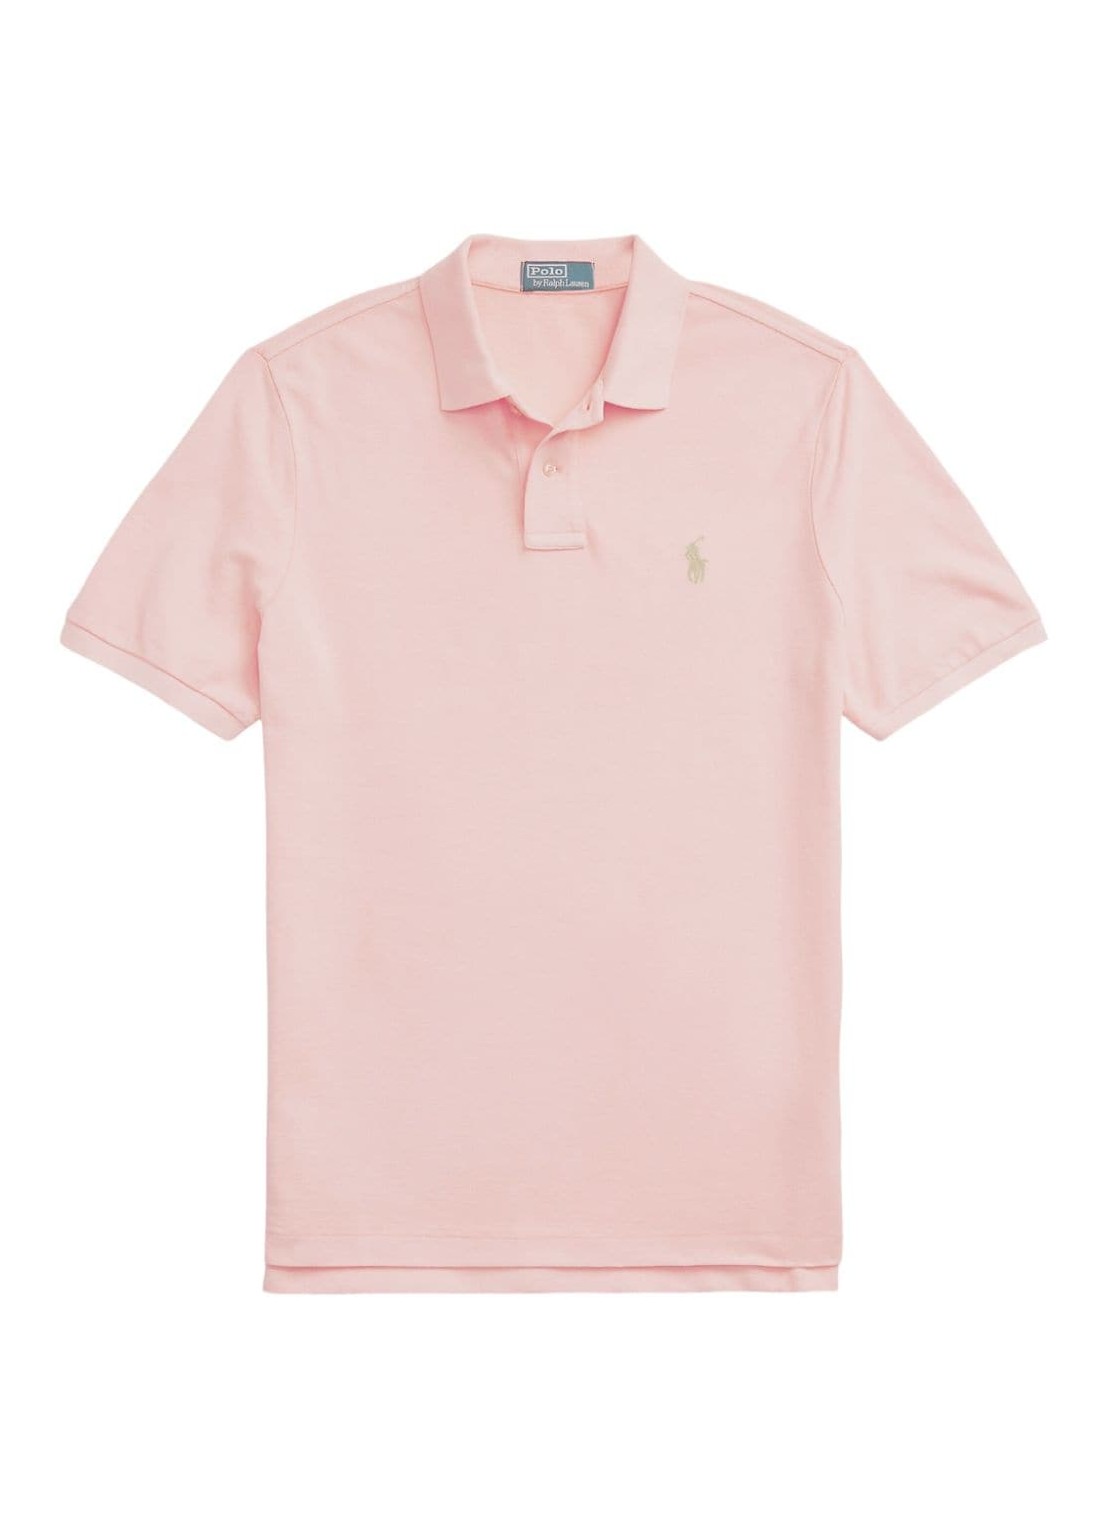 Polo polo ralph lauren polo mansskcclsm1-short sleeve-polo shirt - 710910898001 rose talla rosa
 